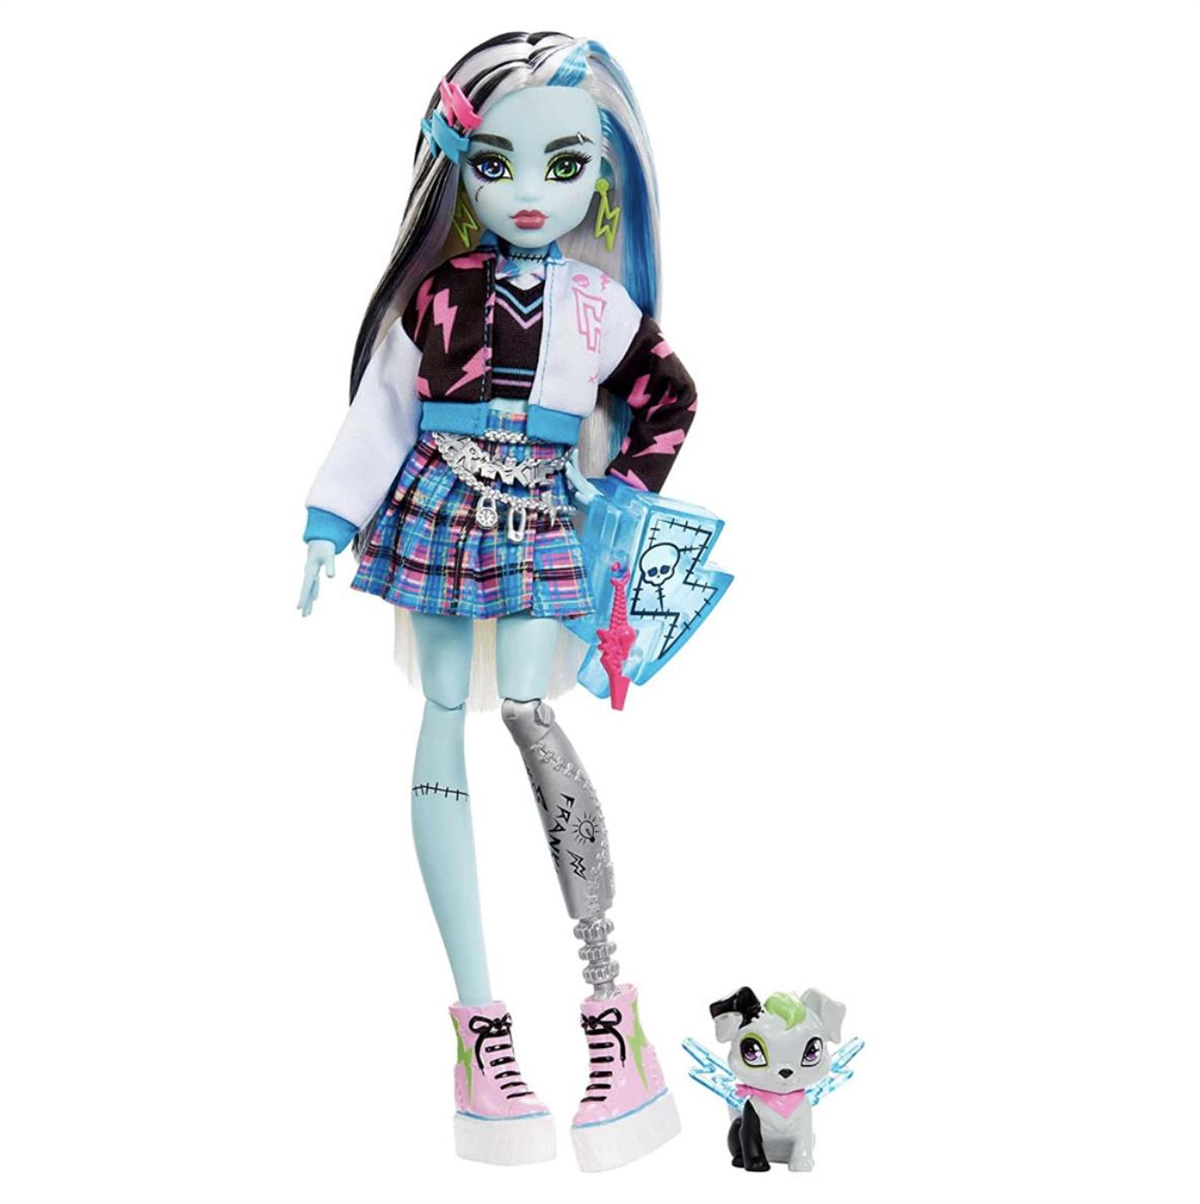 Monster High Ana Karakter Bebekler Frankie Stein HPD53-HHK53 | Toysall